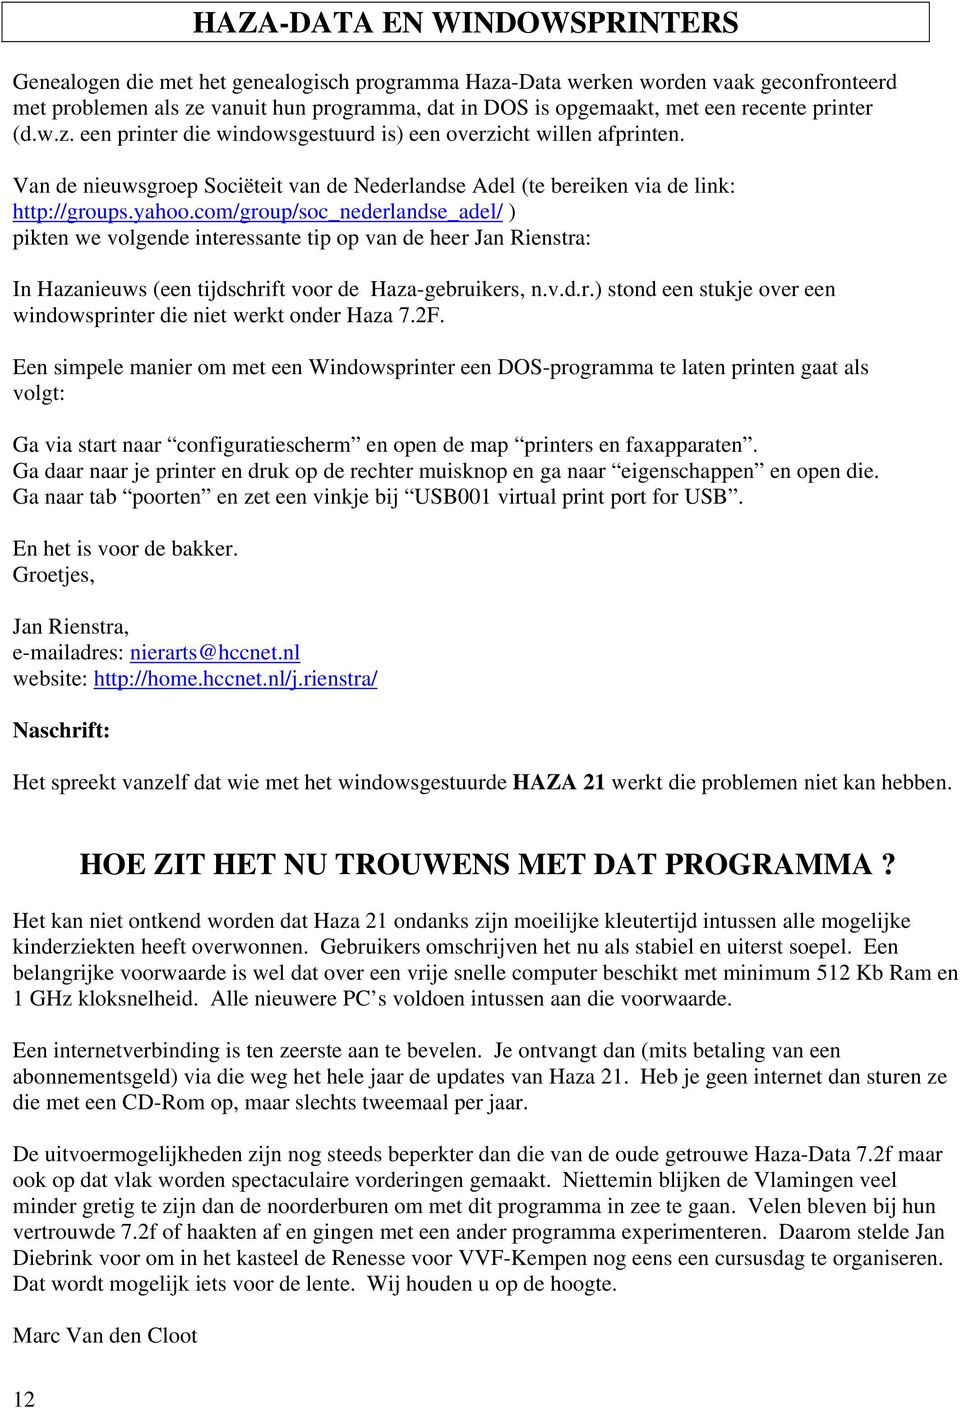 com/group/soc_nederlandse_adel/ ) pikten we volgende interessante tip op van de heer Jan Rienstra: In Hazanieuws (een tijdschrift voor de Haza-gebruikers, n.v.d.r.) stond een stukje over een windowsprinter die niet werkt onder Haza 7.